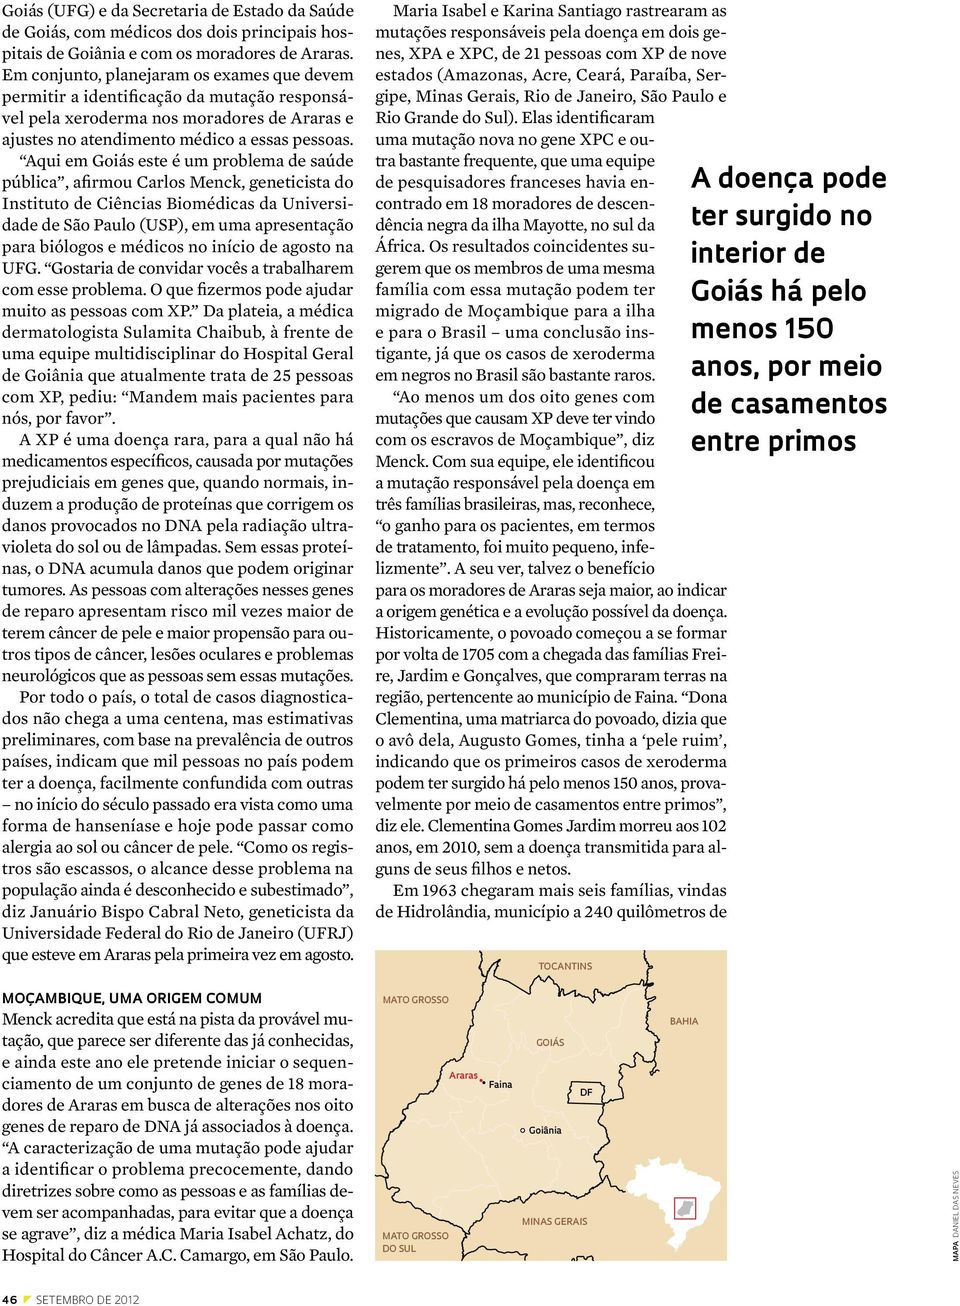 Aqui em Goiás este é um problema de saúde pública, afirmou Carlos Menck, geneticista do Instituto de Ciências Biomédicas da Universidade de São Paulo (USP), em uma apresentação para biólogos e